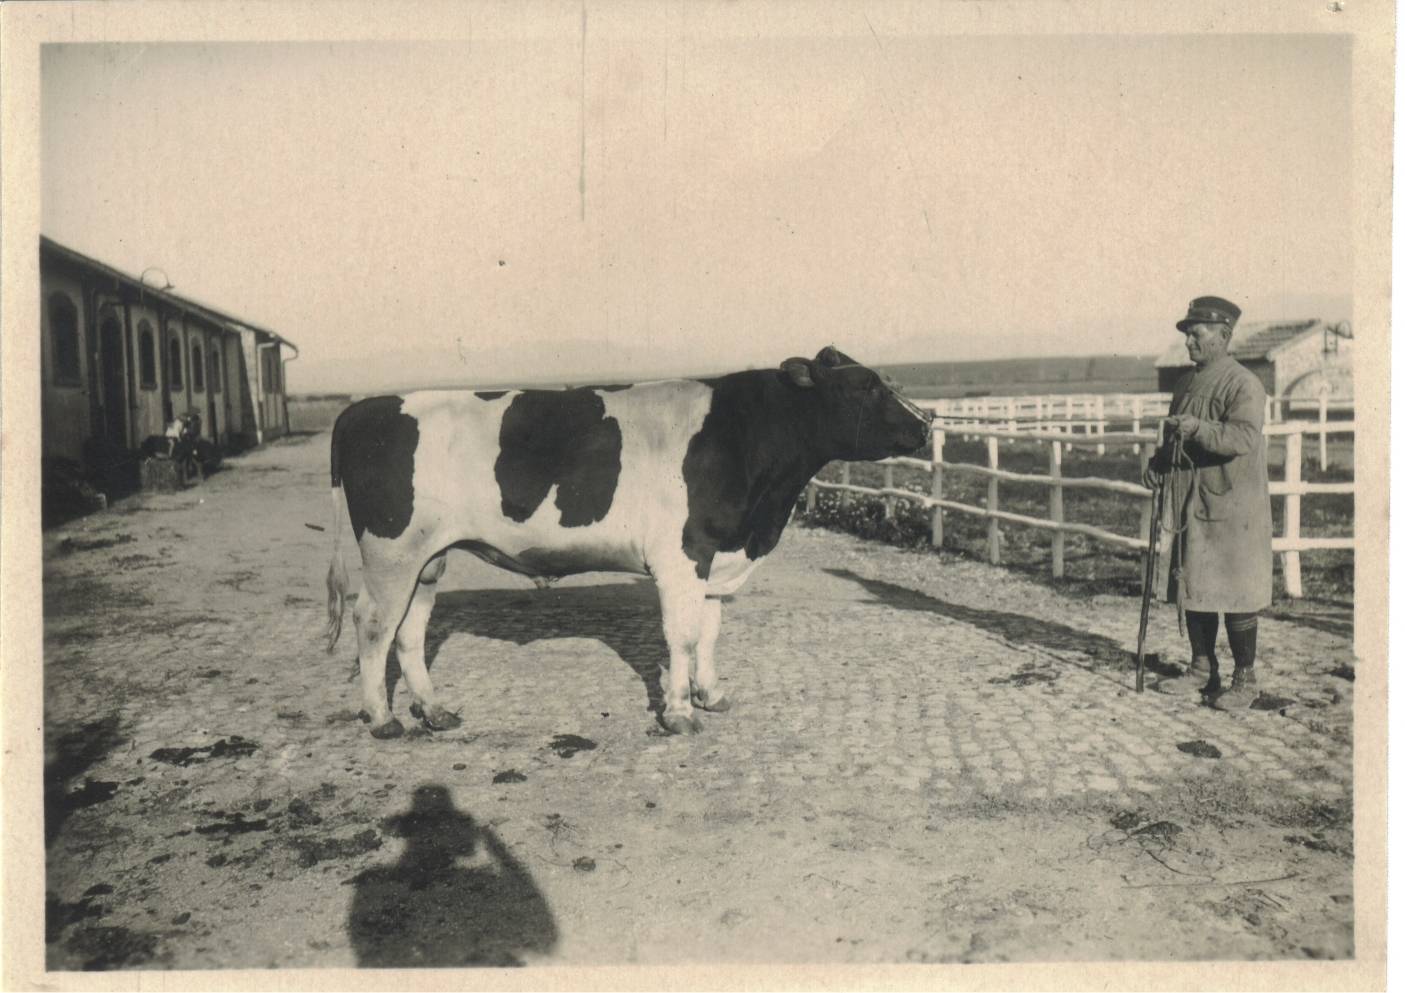 Tenuta di Tor Mancina, 1944. Passacantilli Vincenzo, capo dei vaccari mungitori, che ha distribuito latte ai militari alla macchia, occultando armi e derrate agricole.